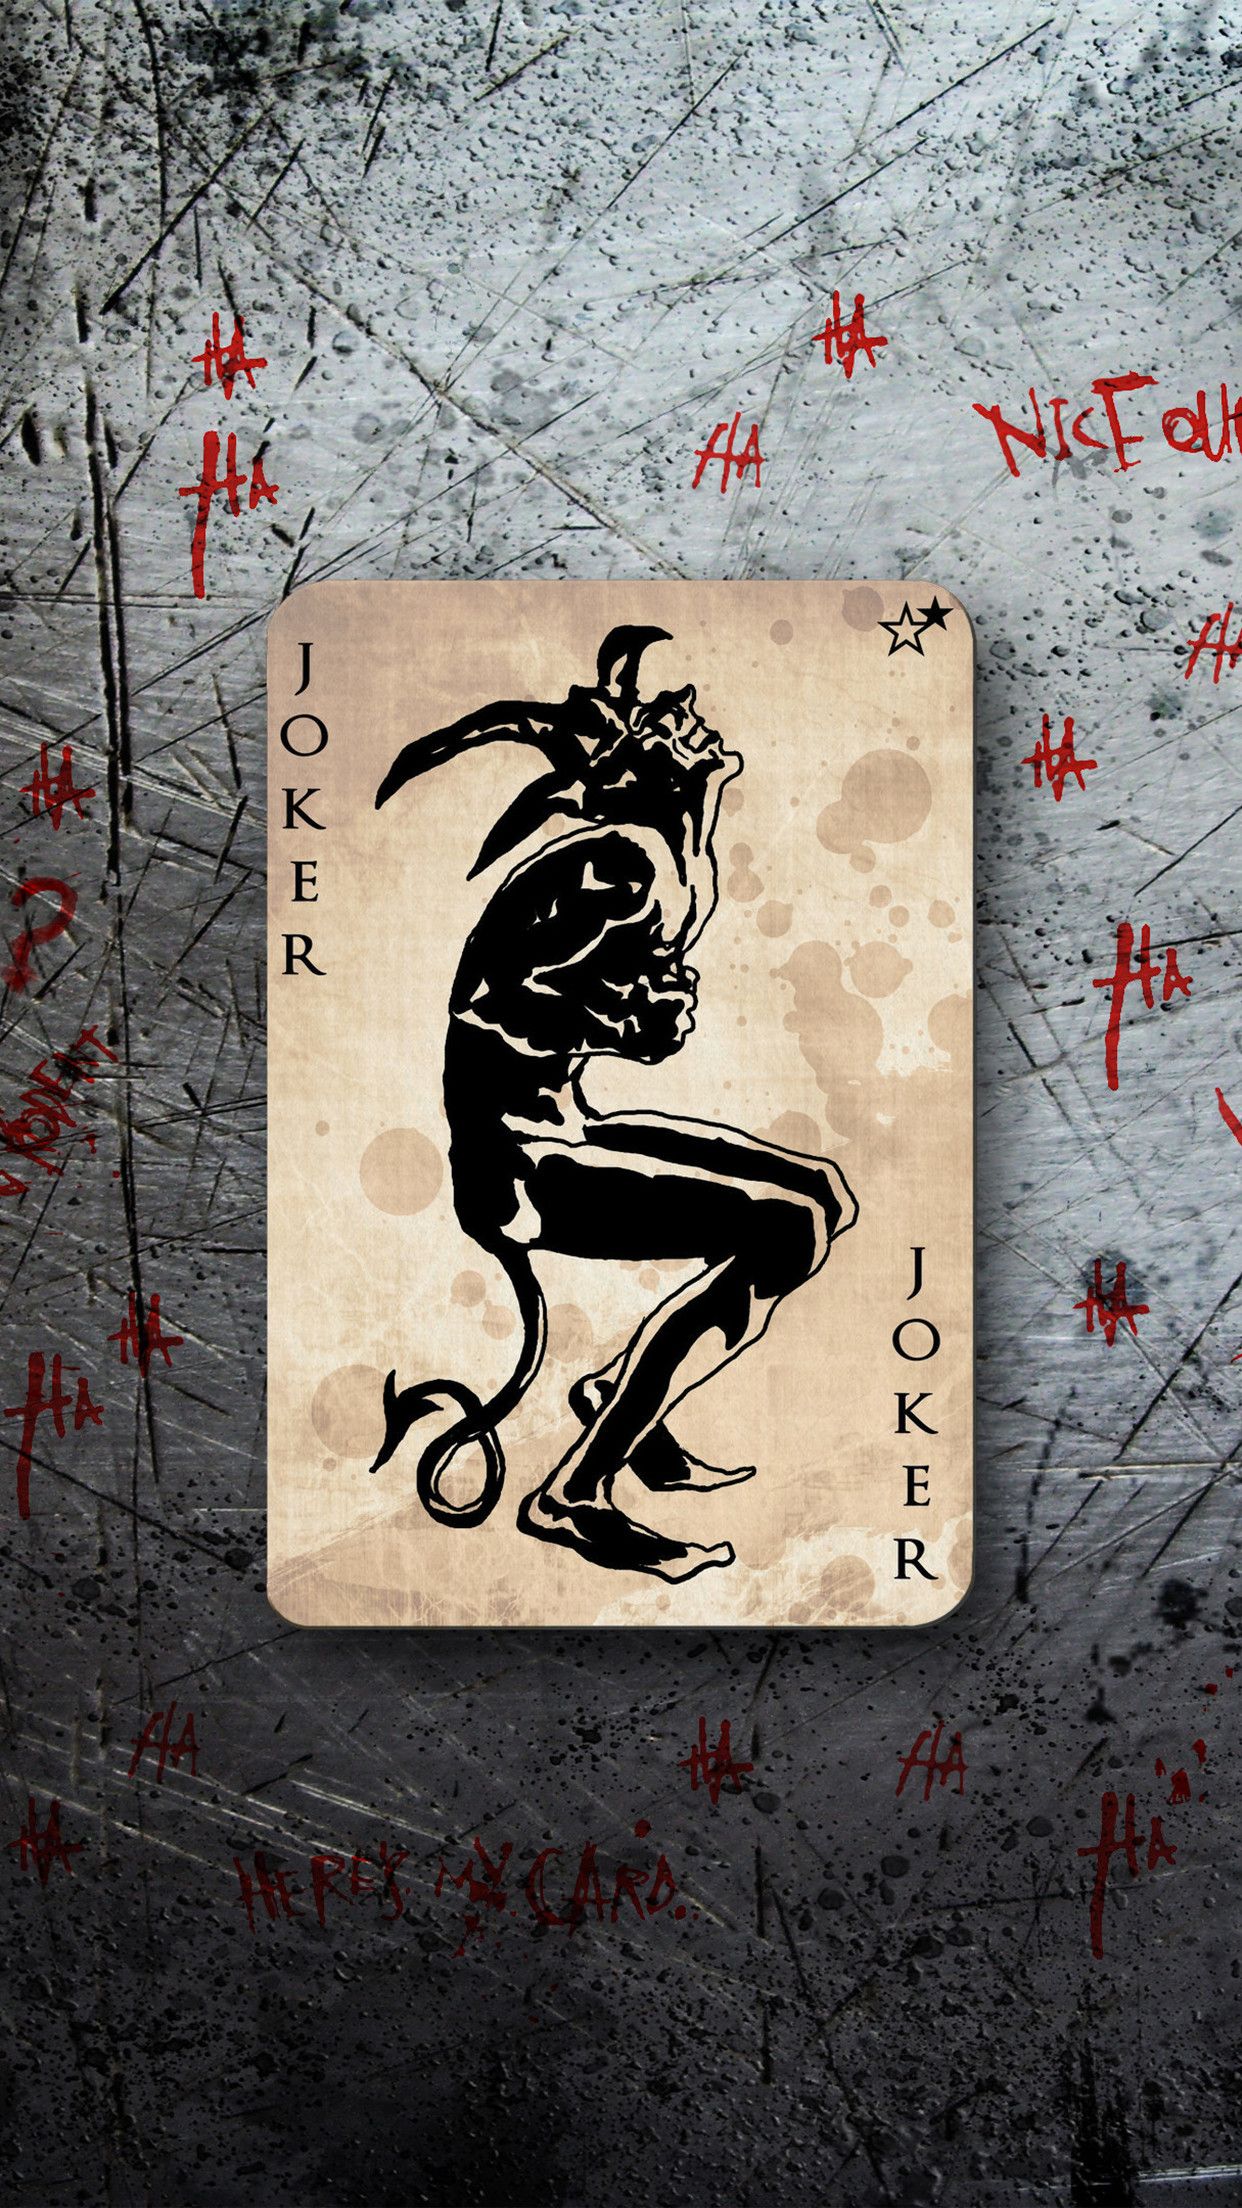 27+] Joker Card Wallpapers - WallpaperSafari